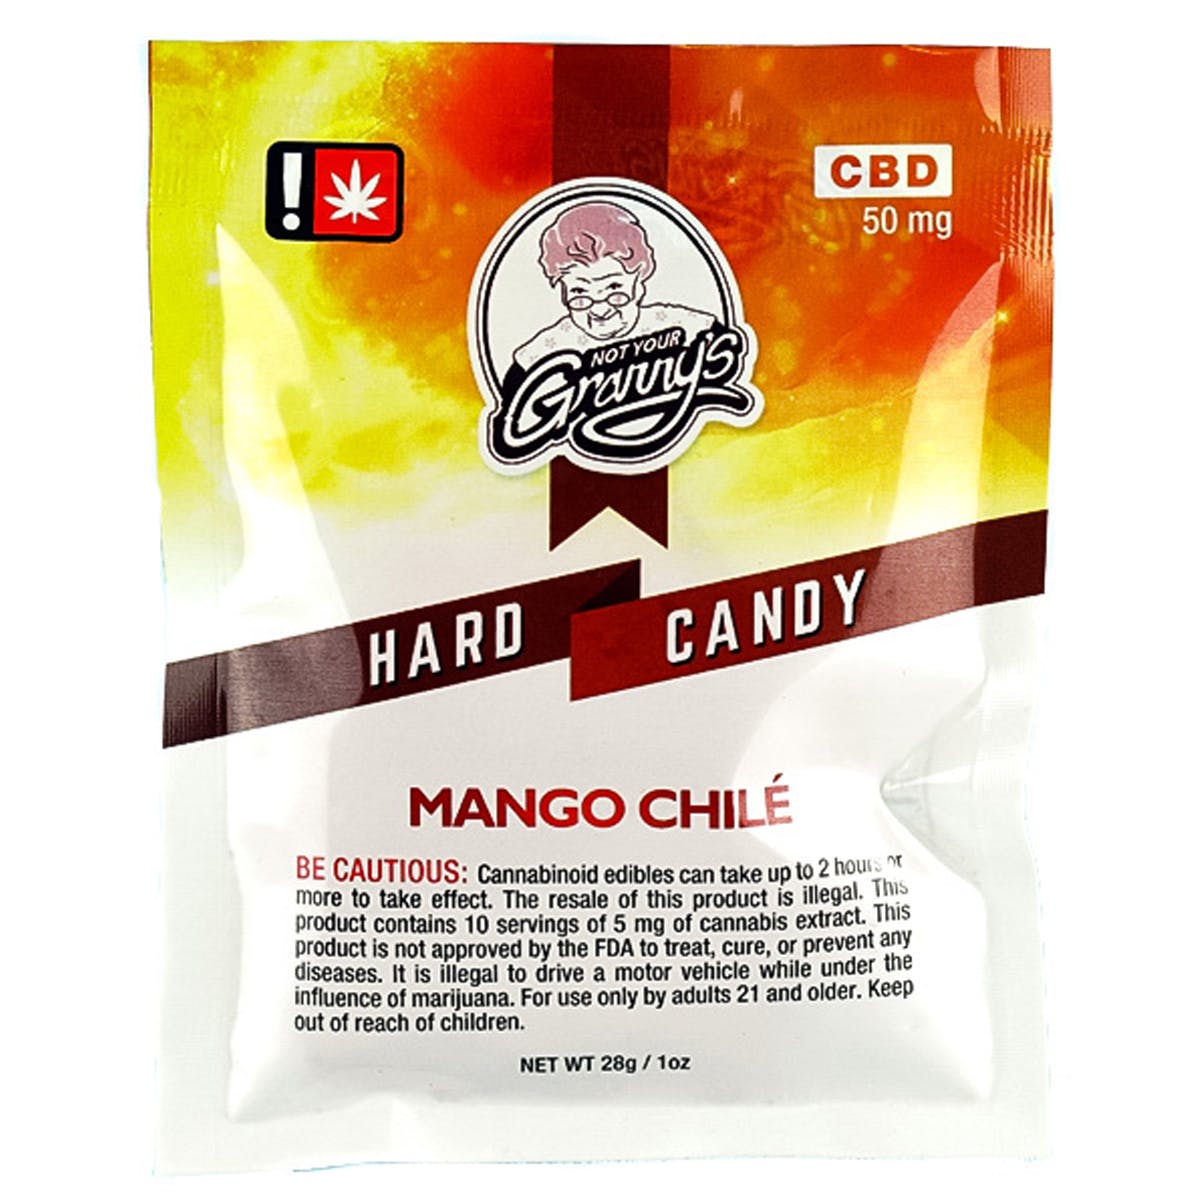 Hard Candy - Mango Chile CBD 50mg